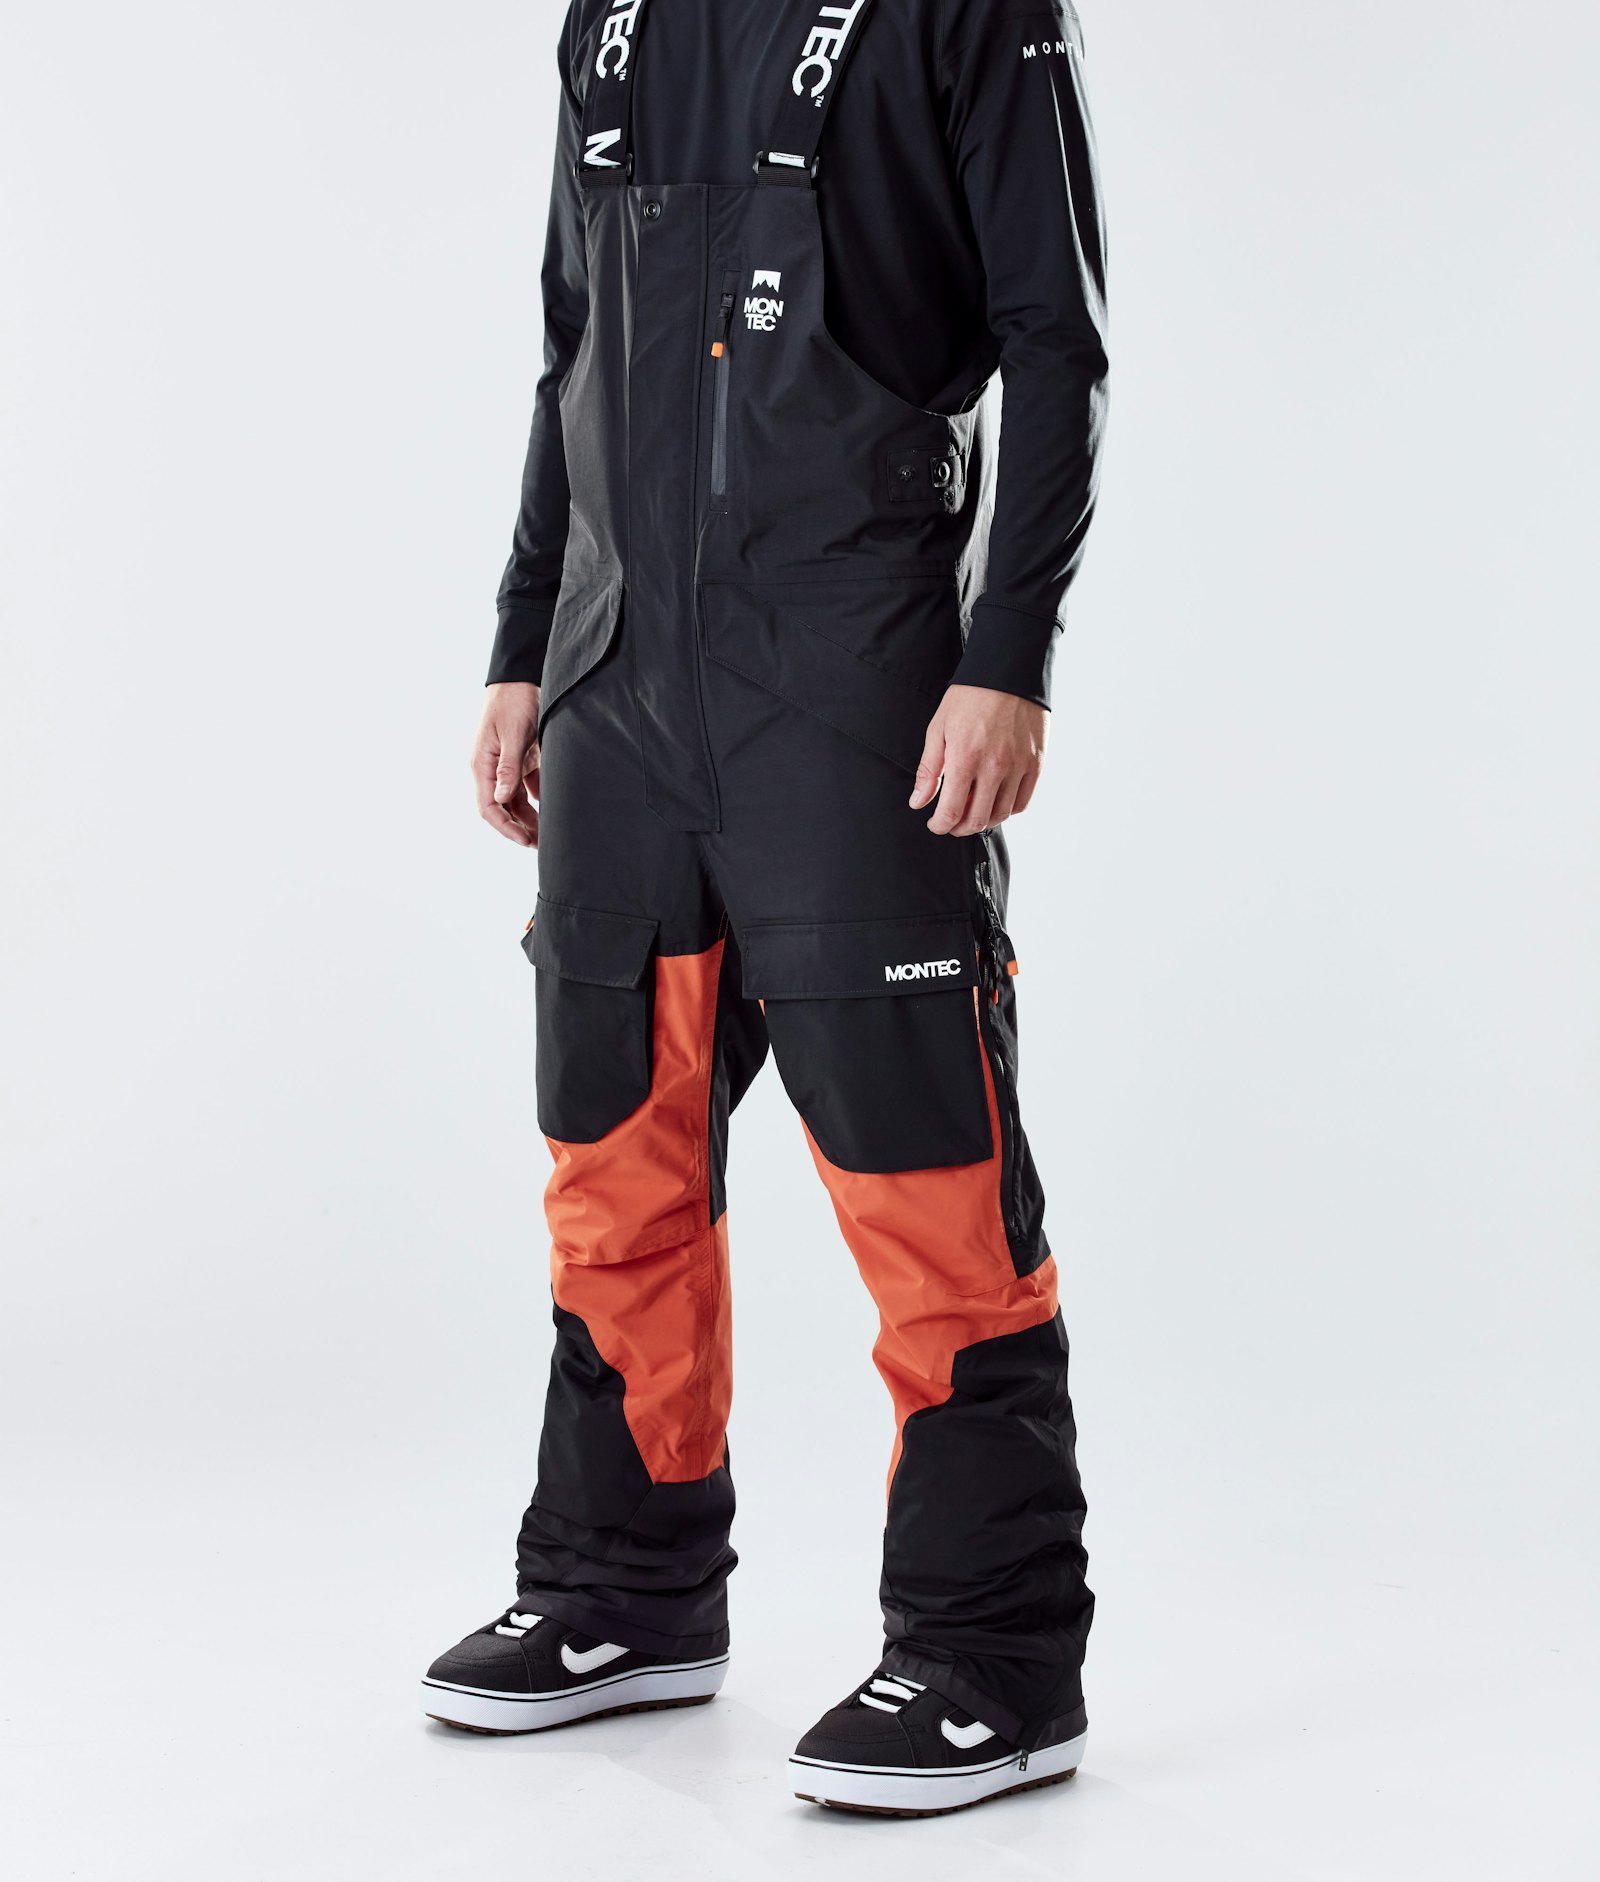 Fawk 2020 Kalhoty na Snowboard Pánské Black/Orange